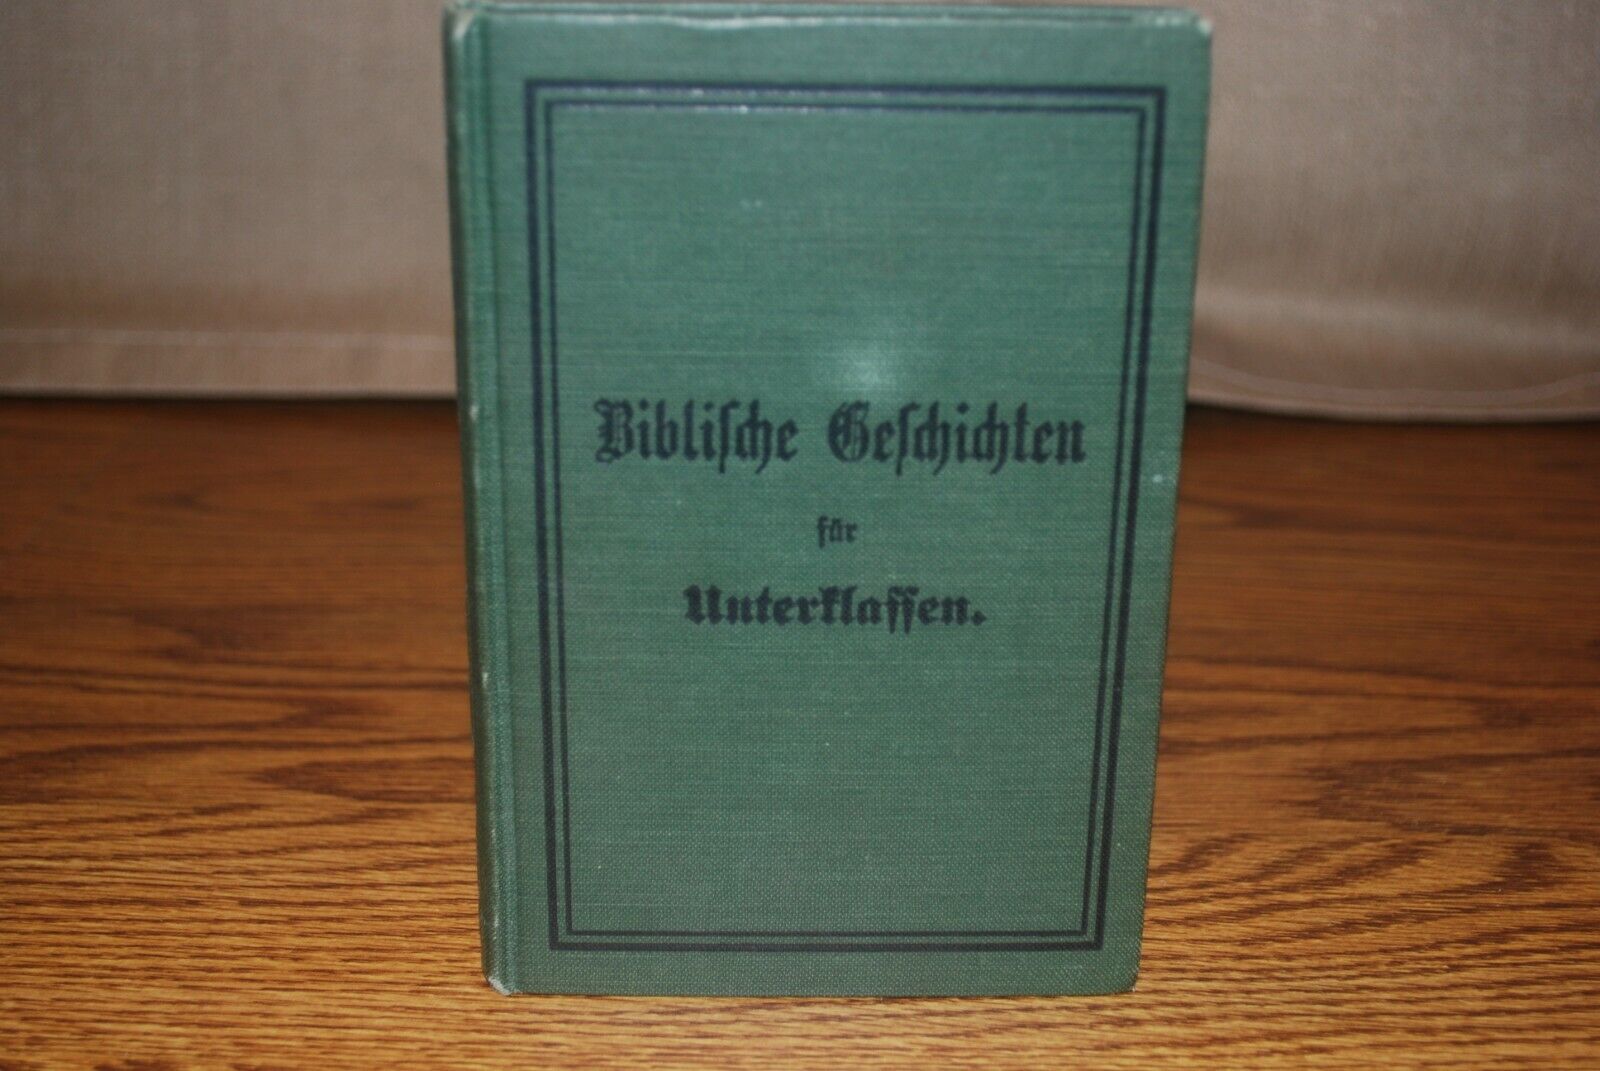 Antique German Bible Stories - Biblische Geschichten fur Unterklassen, 1907